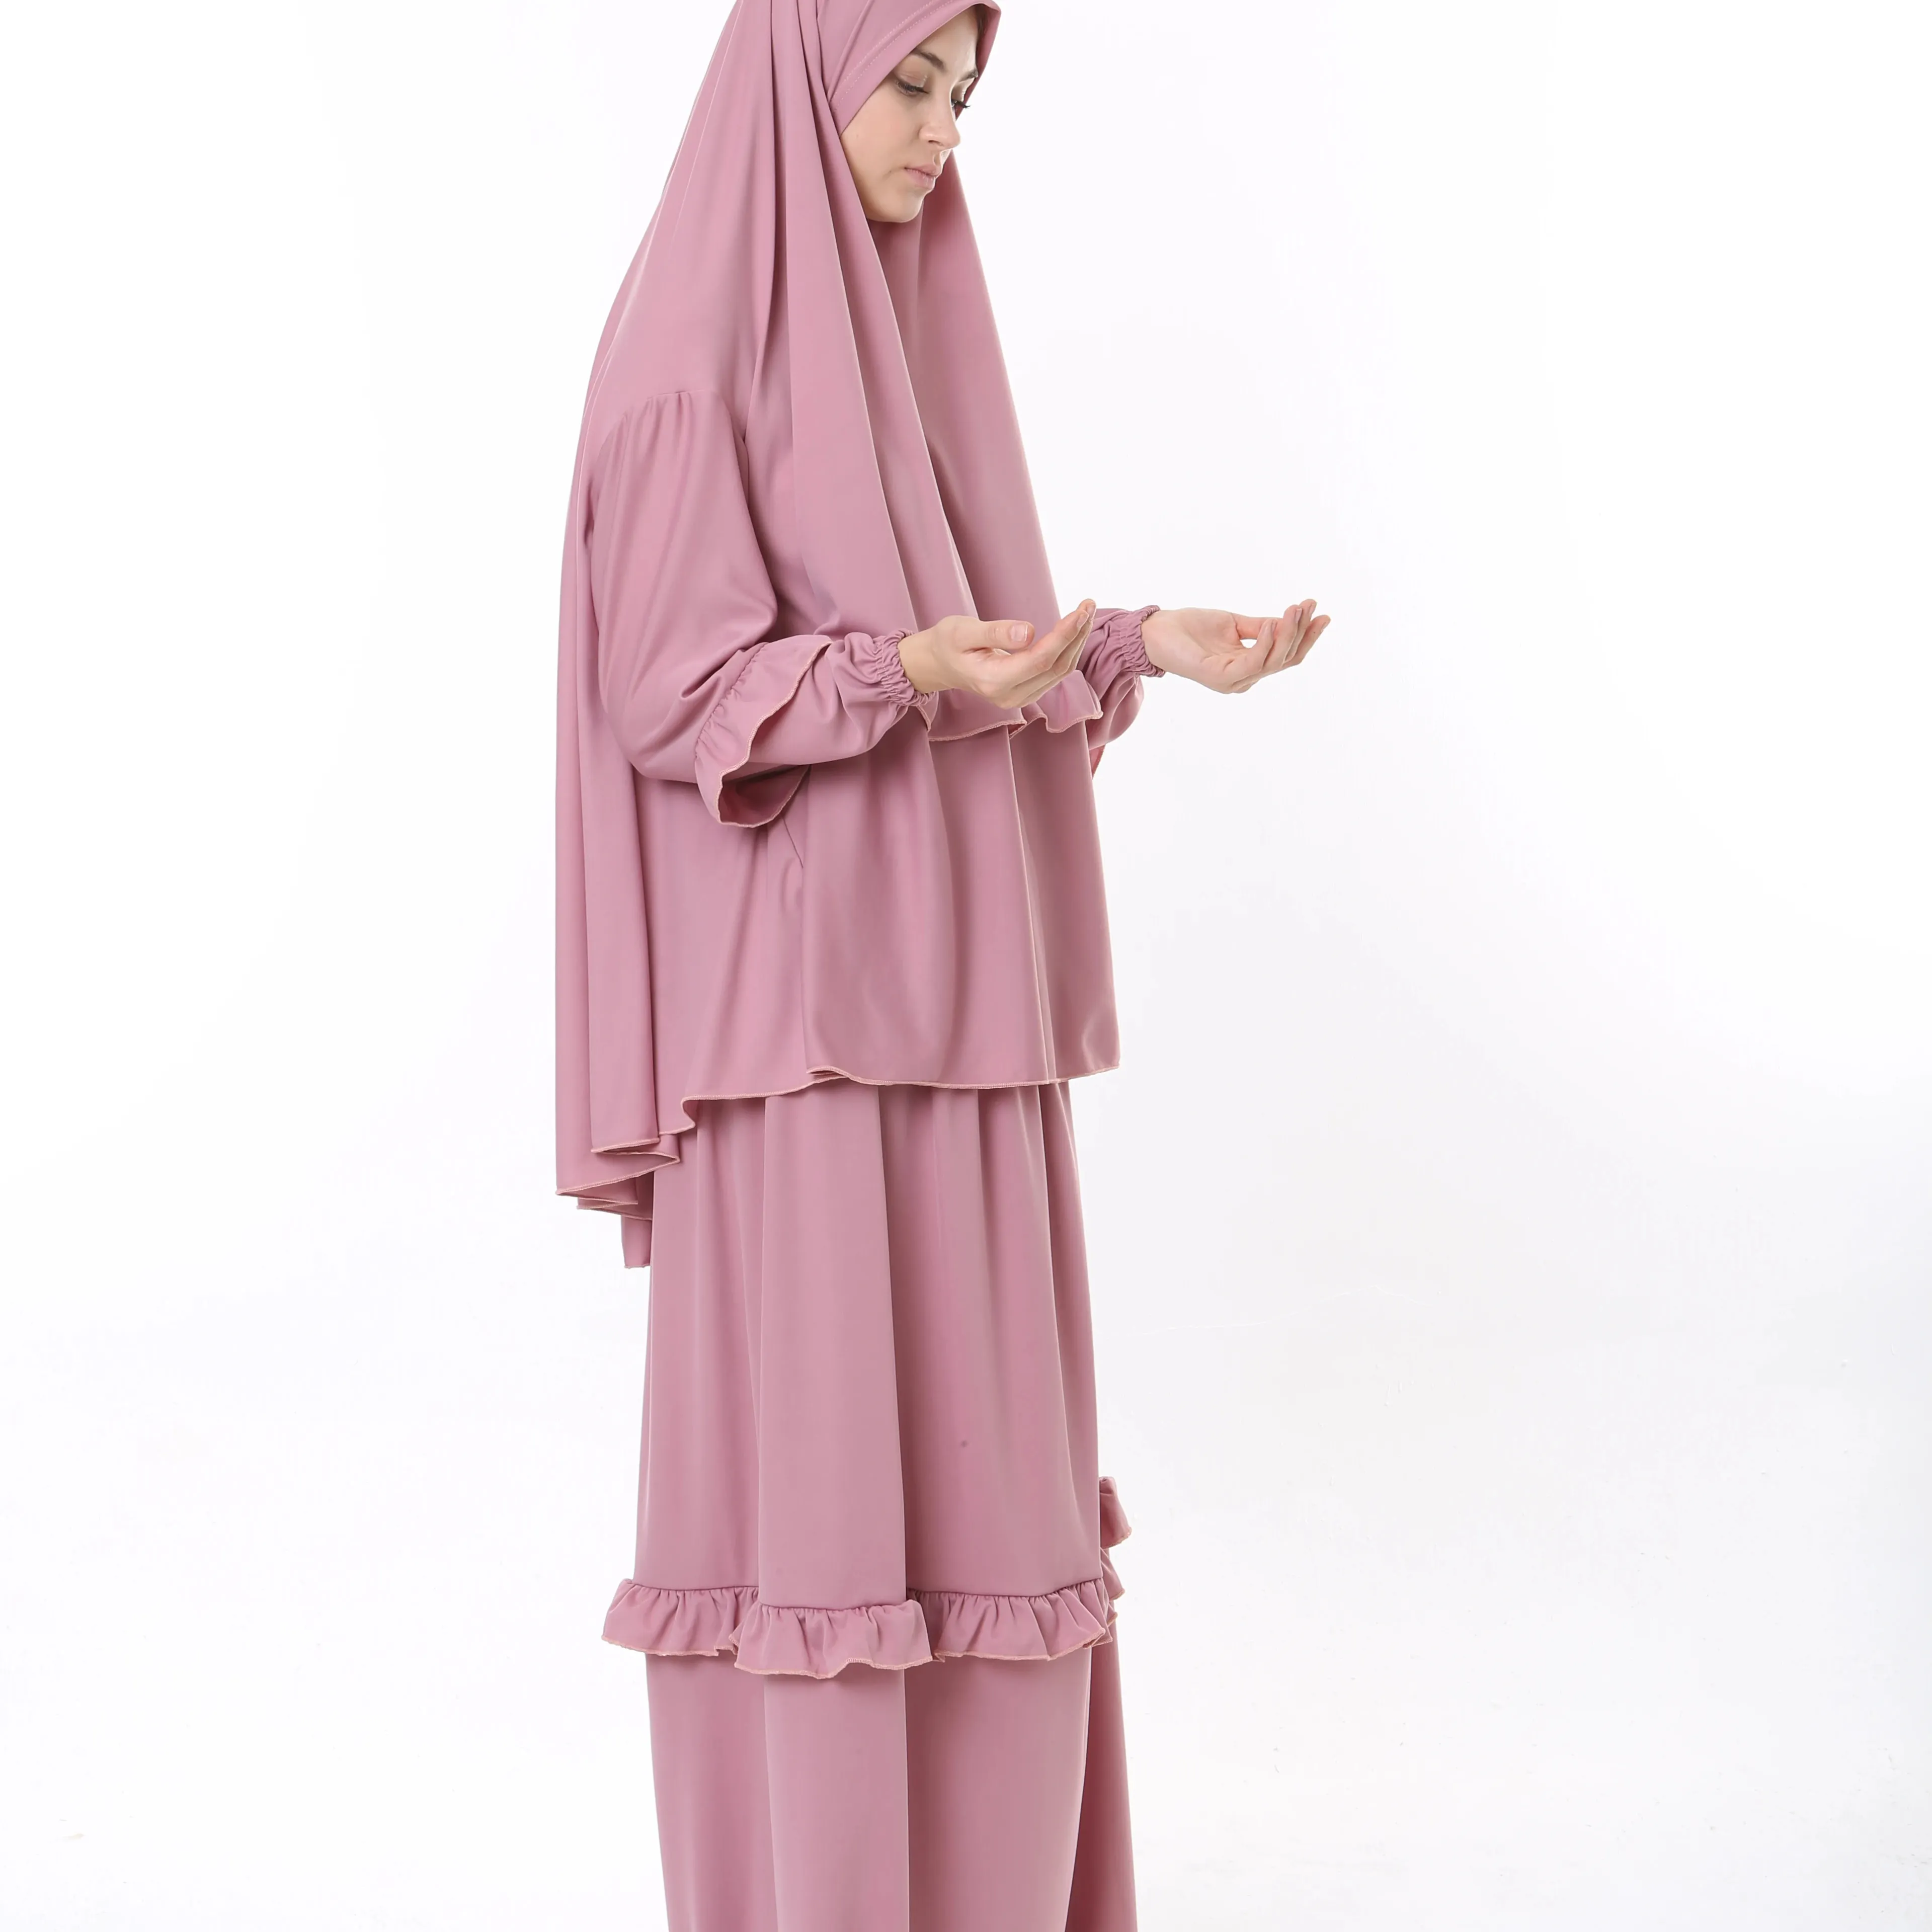 Bộ cầu nguyện màu hồng khiêm tốn và phong cách dành cho phụ nữ với đường viền cổ tròn và tay áo dài